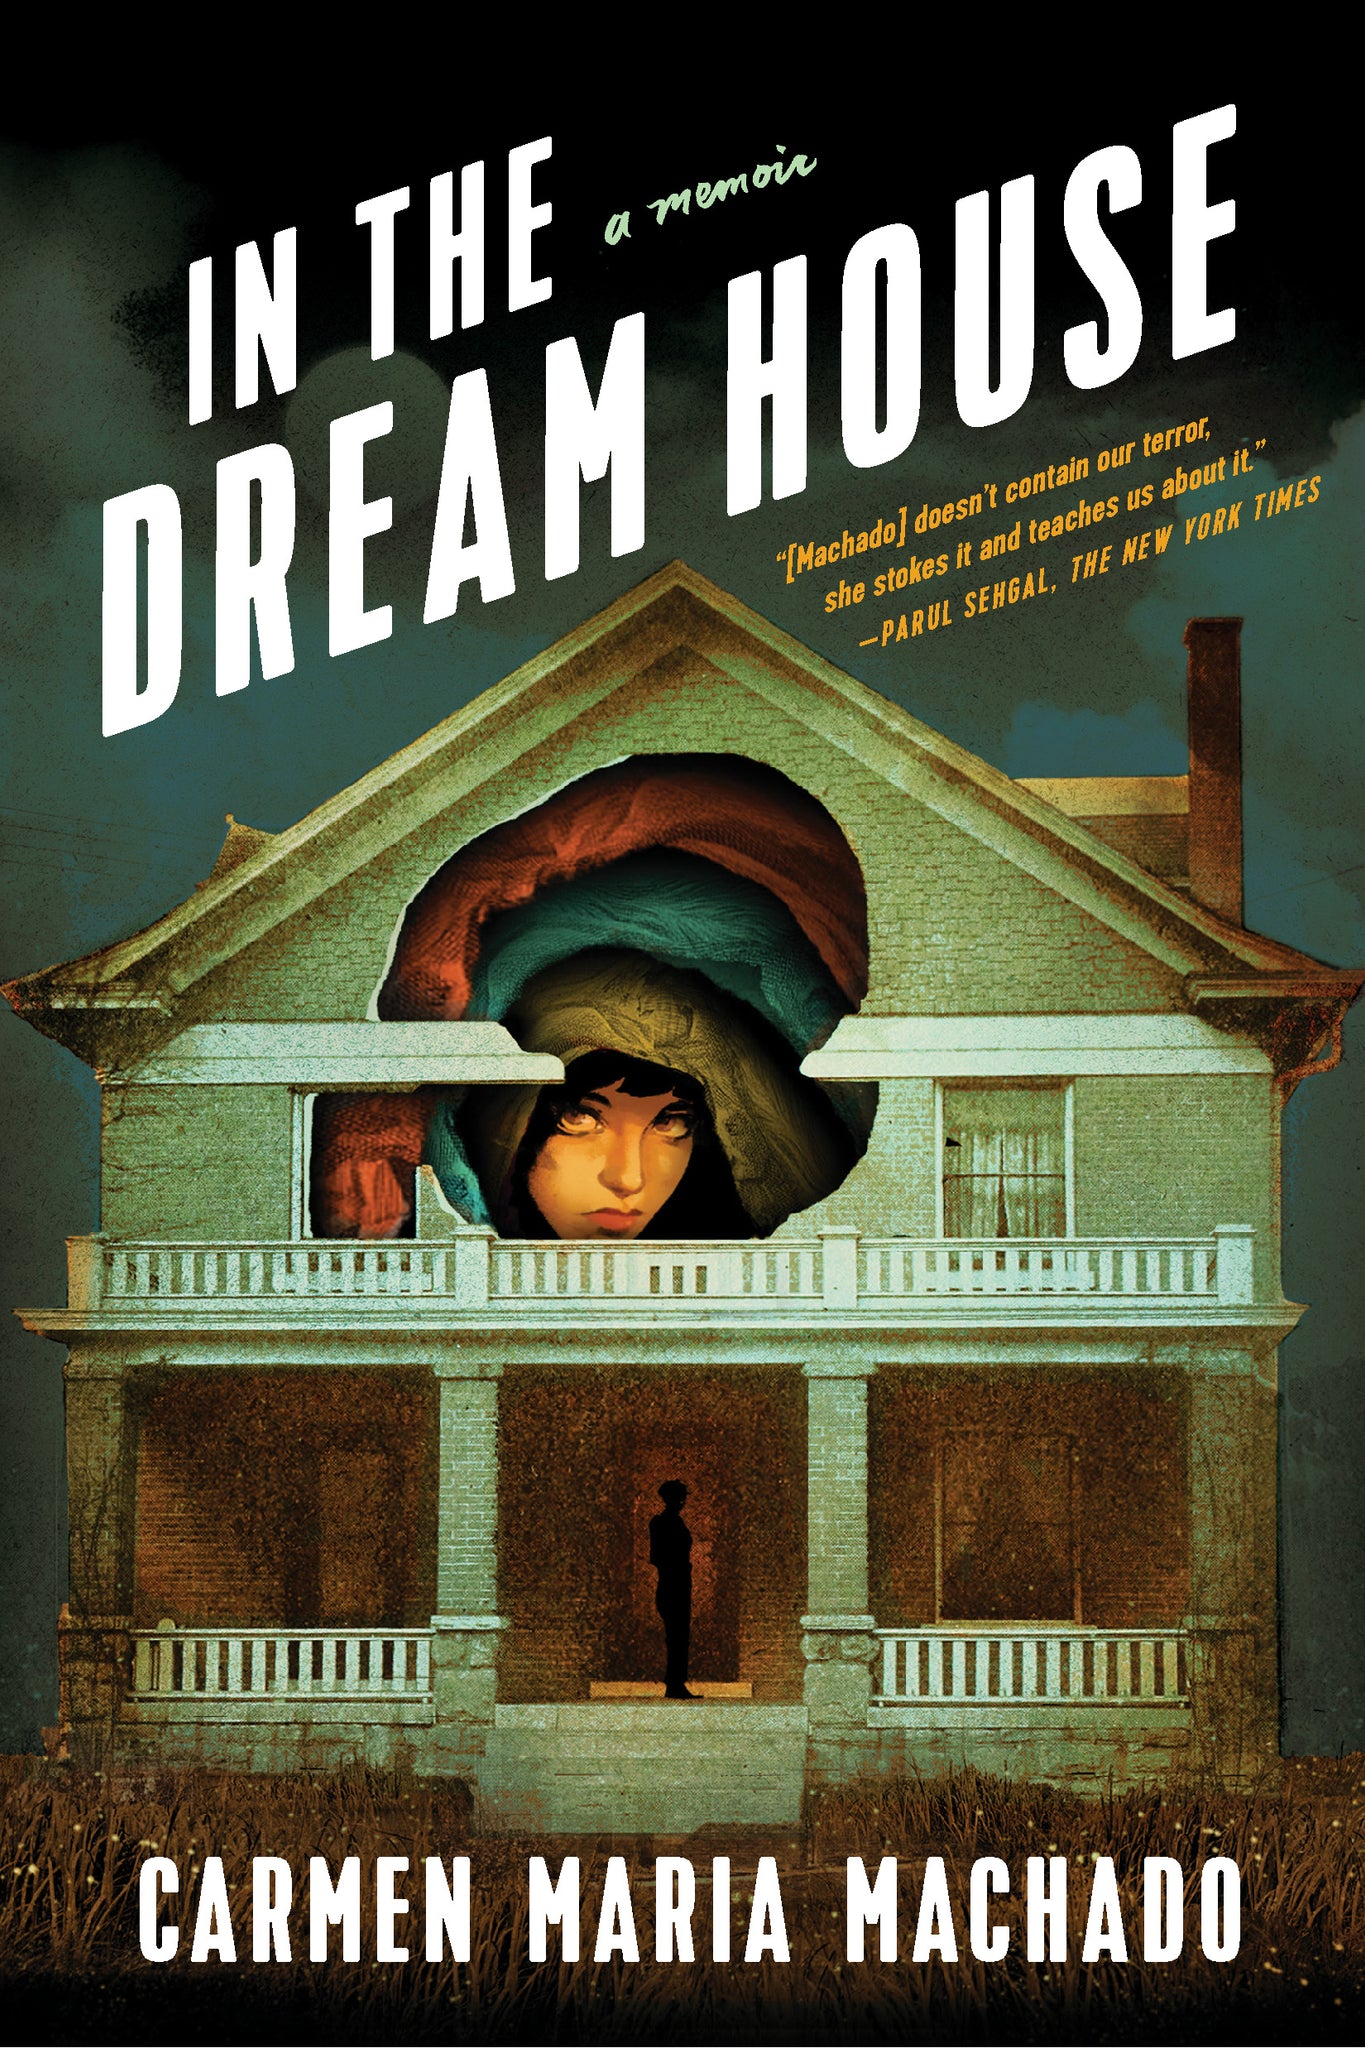 In the Dream House: A Memoir - Carmen Maria Machado